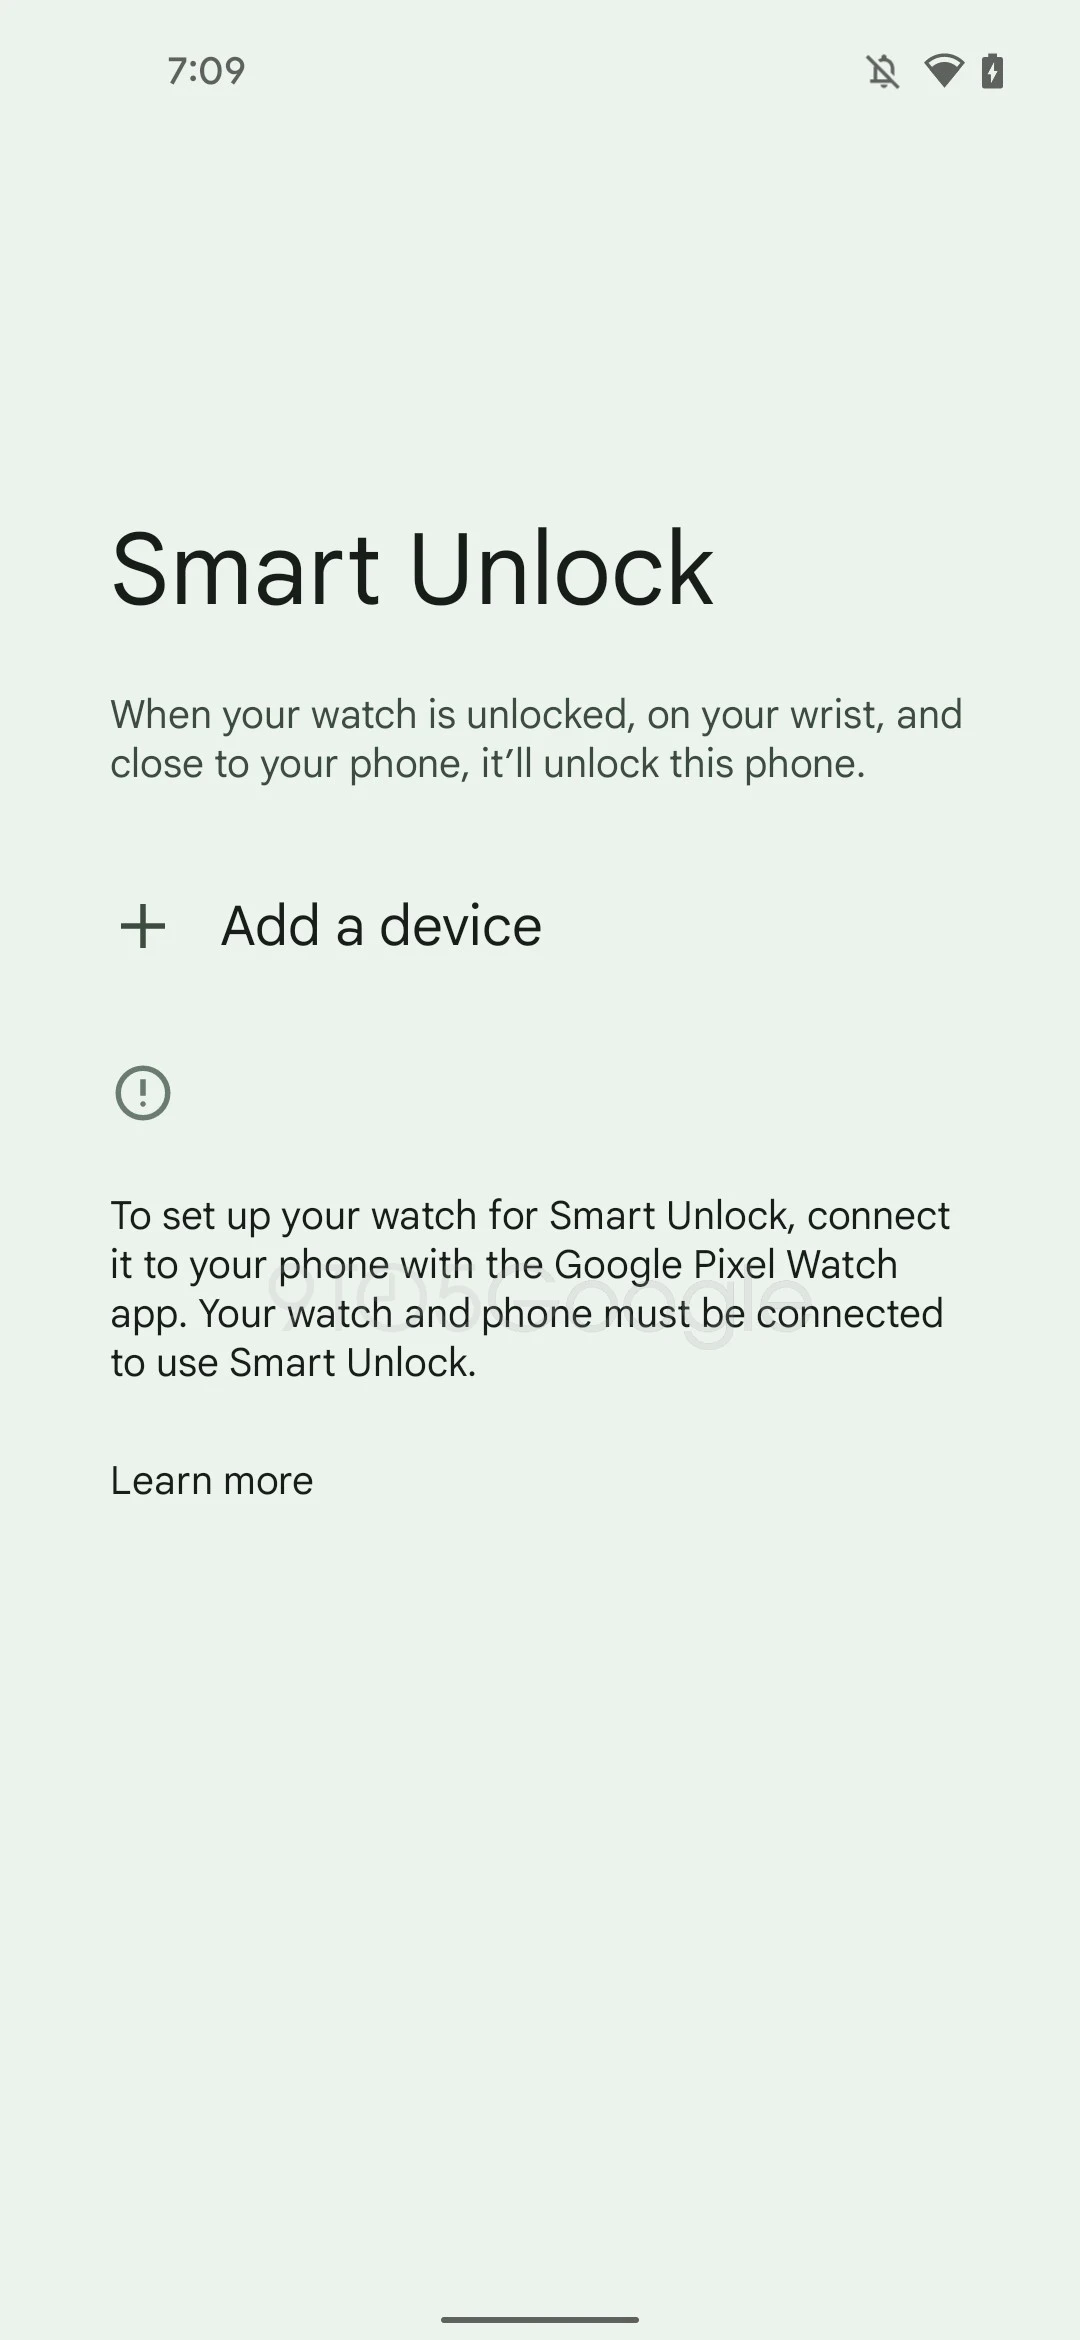 يأتي تطبيق Google Pixel Watch جنبًا إلى جنب مع Wear OS Smart Unlock لنظام Android 2